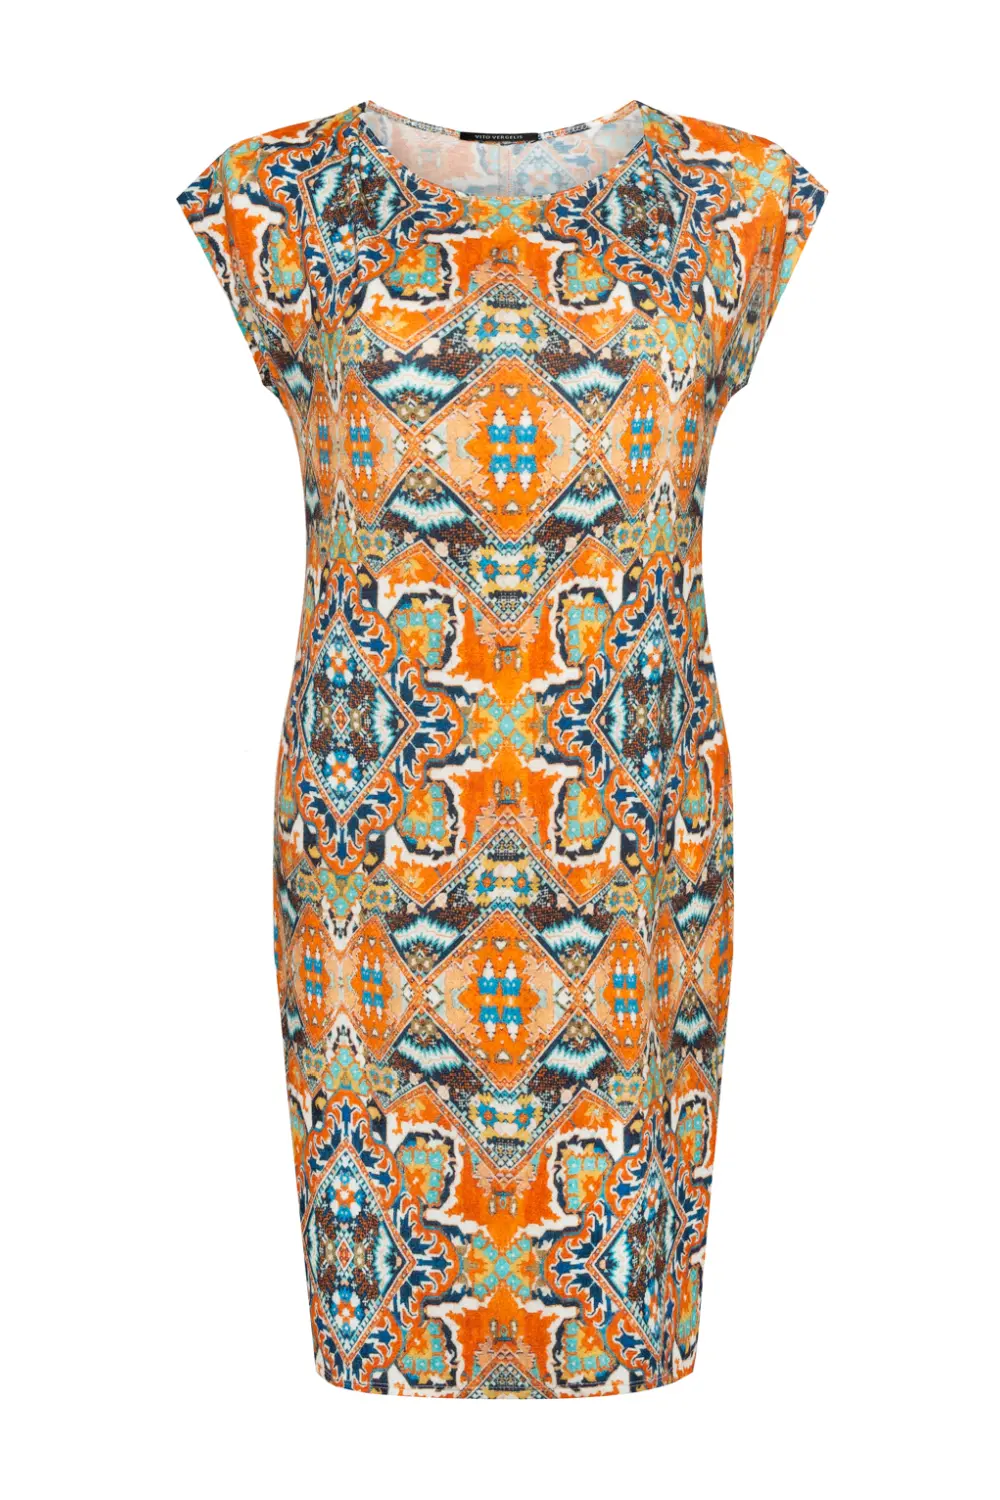 Dzianinowa sukienka we wzory pomarańczowa w nadruk mozaiki polska marka Vito Vergelis Moda Wrocław